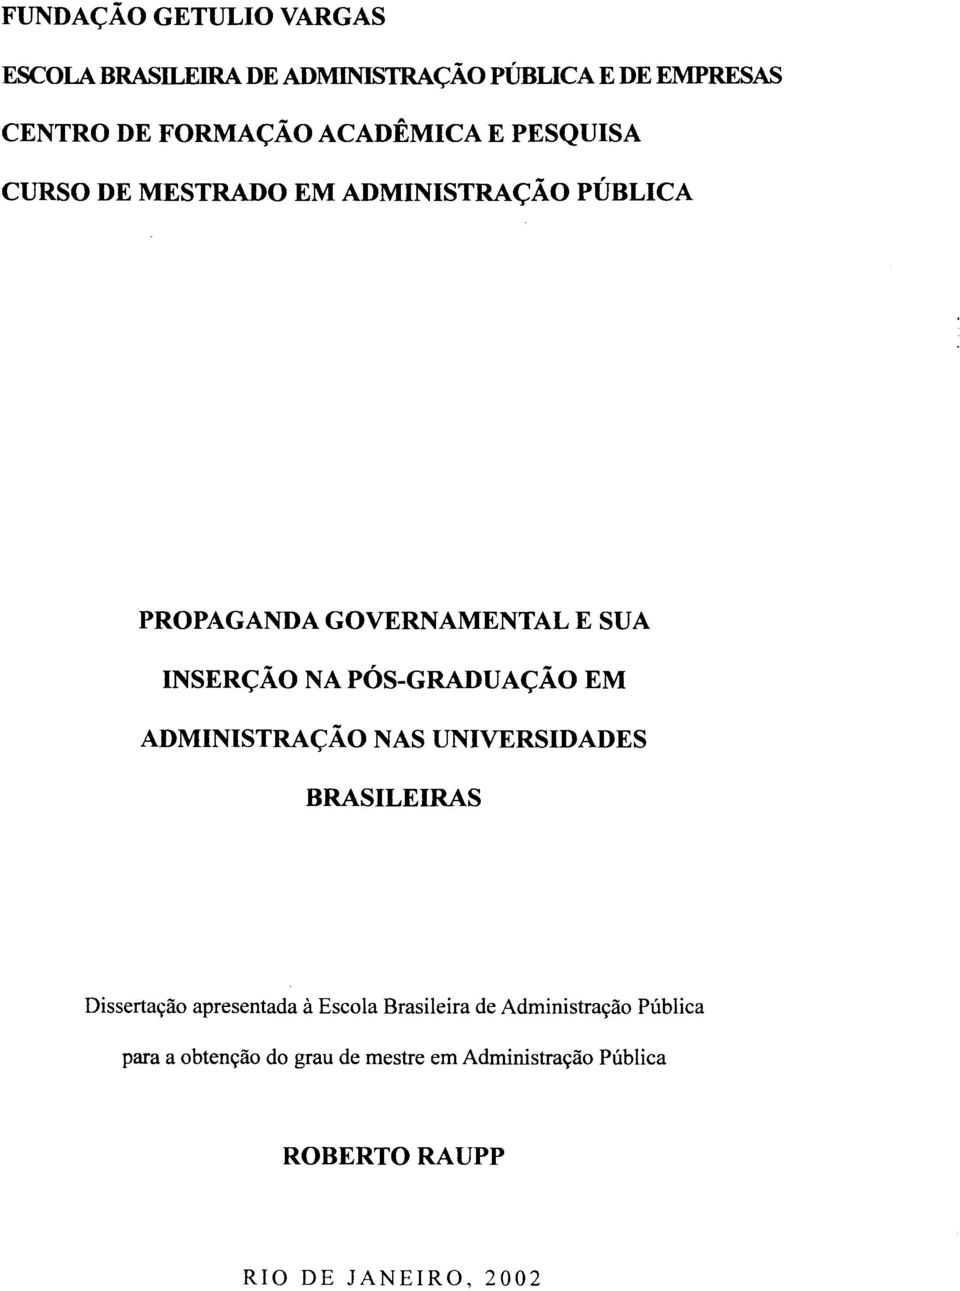 PÓS-GRADUAÇÃO EM ADMINISTRAÇÃO NAS UNIVERSIDADES BRASILEIRAS Dissertação apresentada à Escola Brasileira de